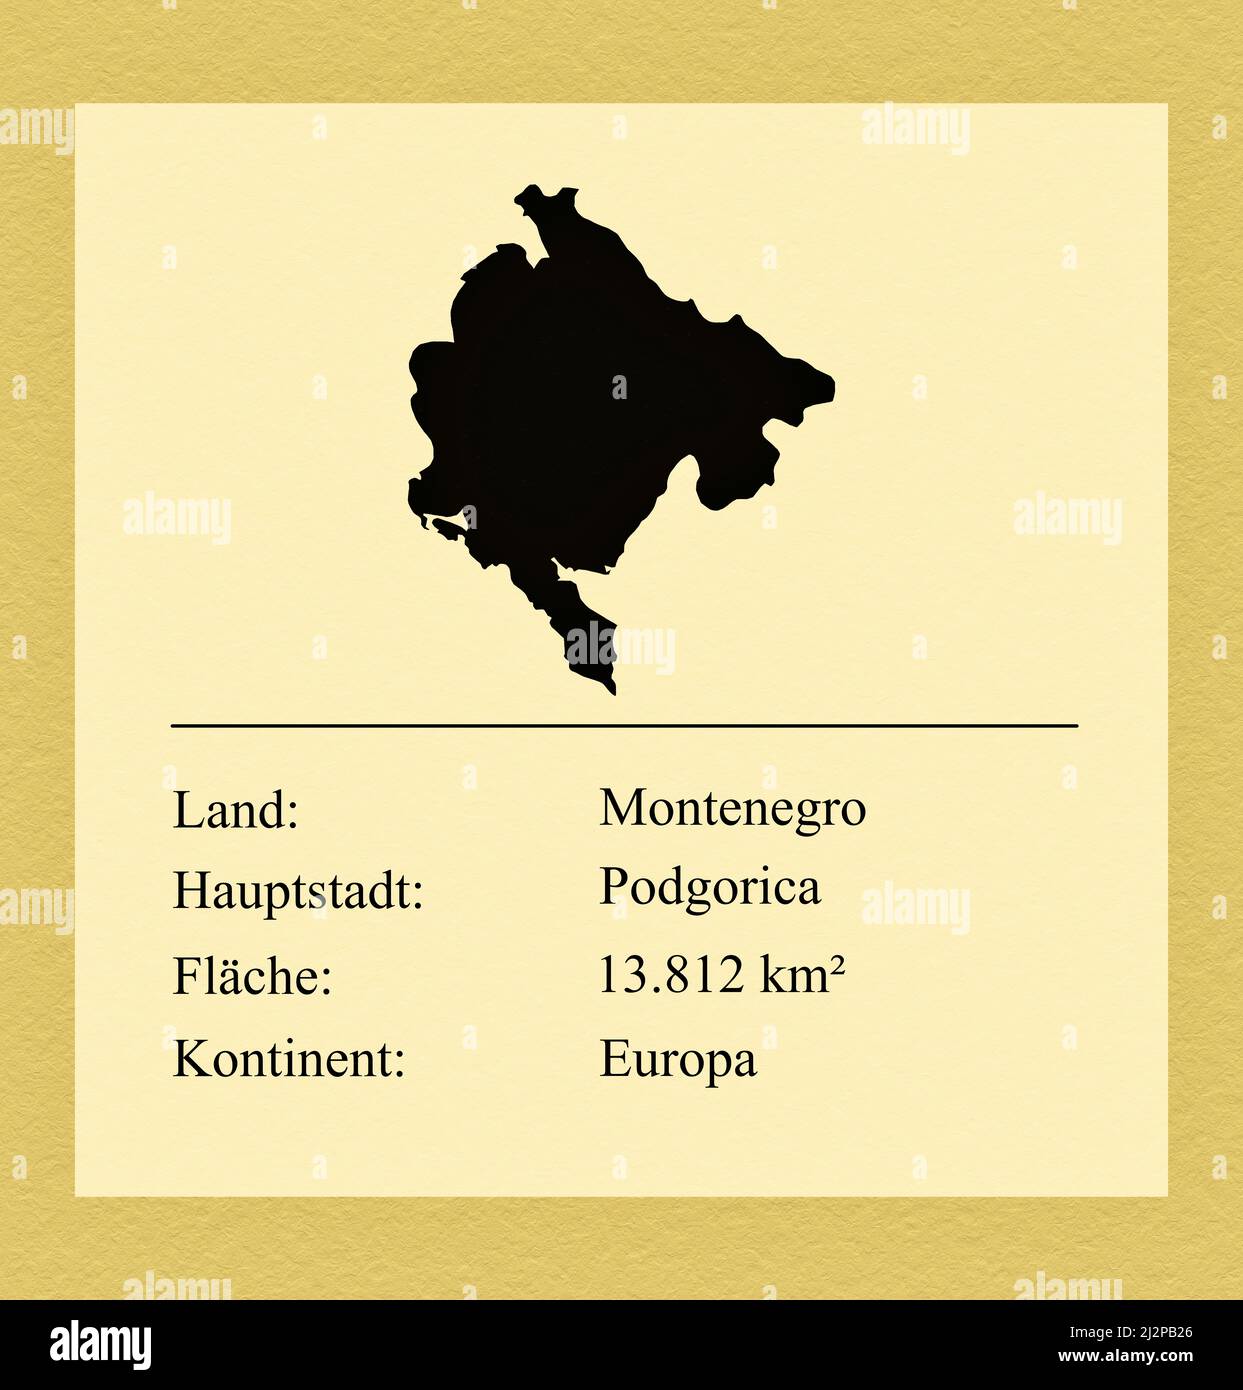 Umrisse des Landes Montenegro, darunter ein kleiner Steckbrief mit Ländernamen, Hauptstadt, Fläche und Kontinent Stock Photo